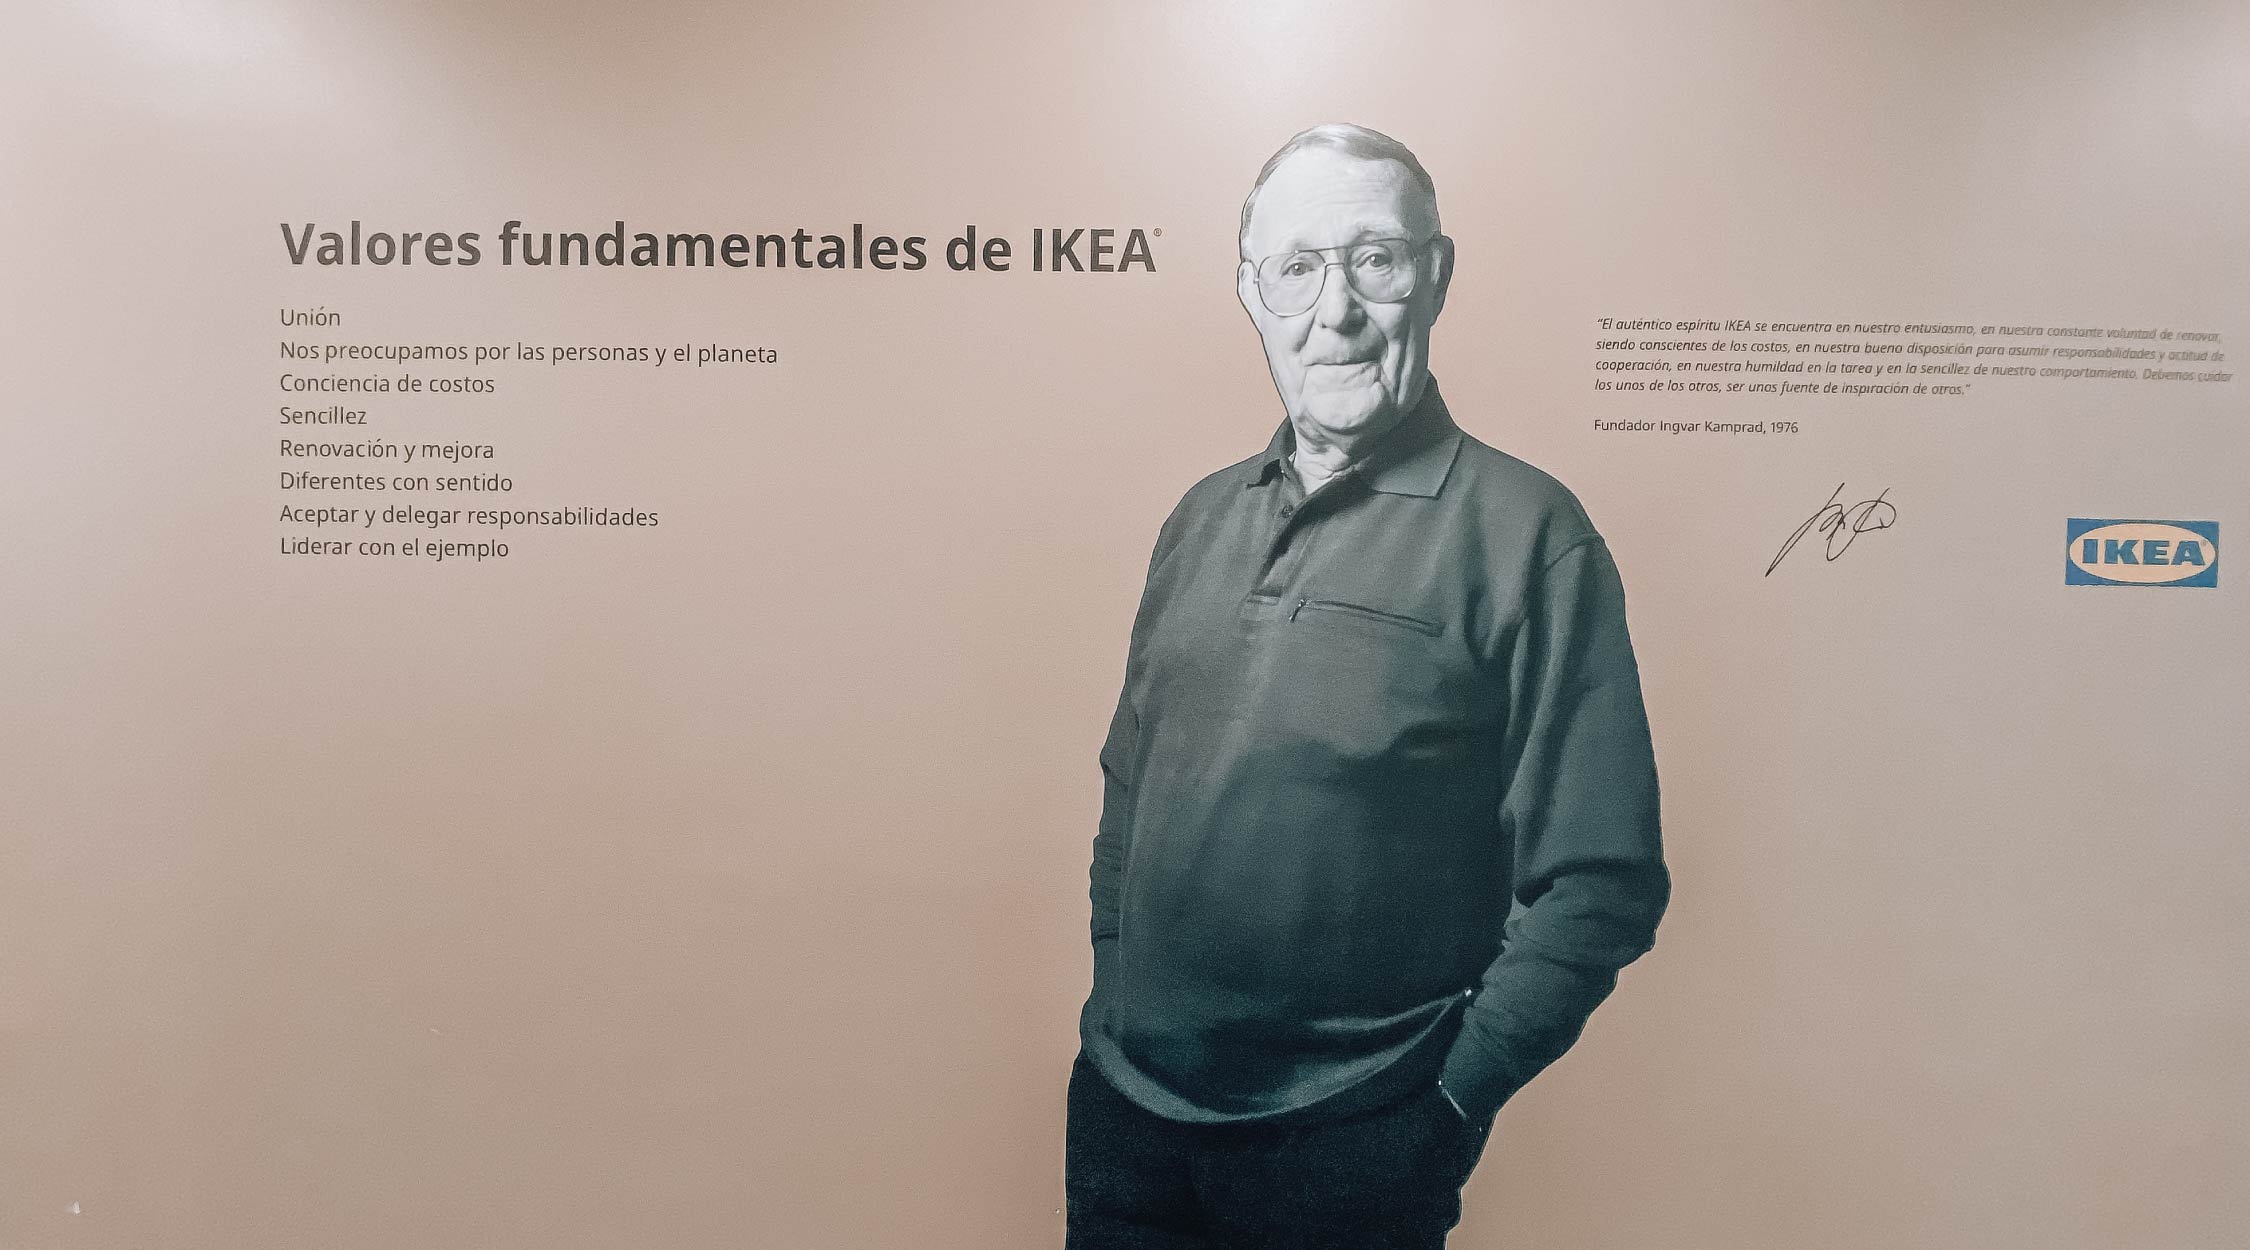 Diseño de interiores para oficinas Ikea